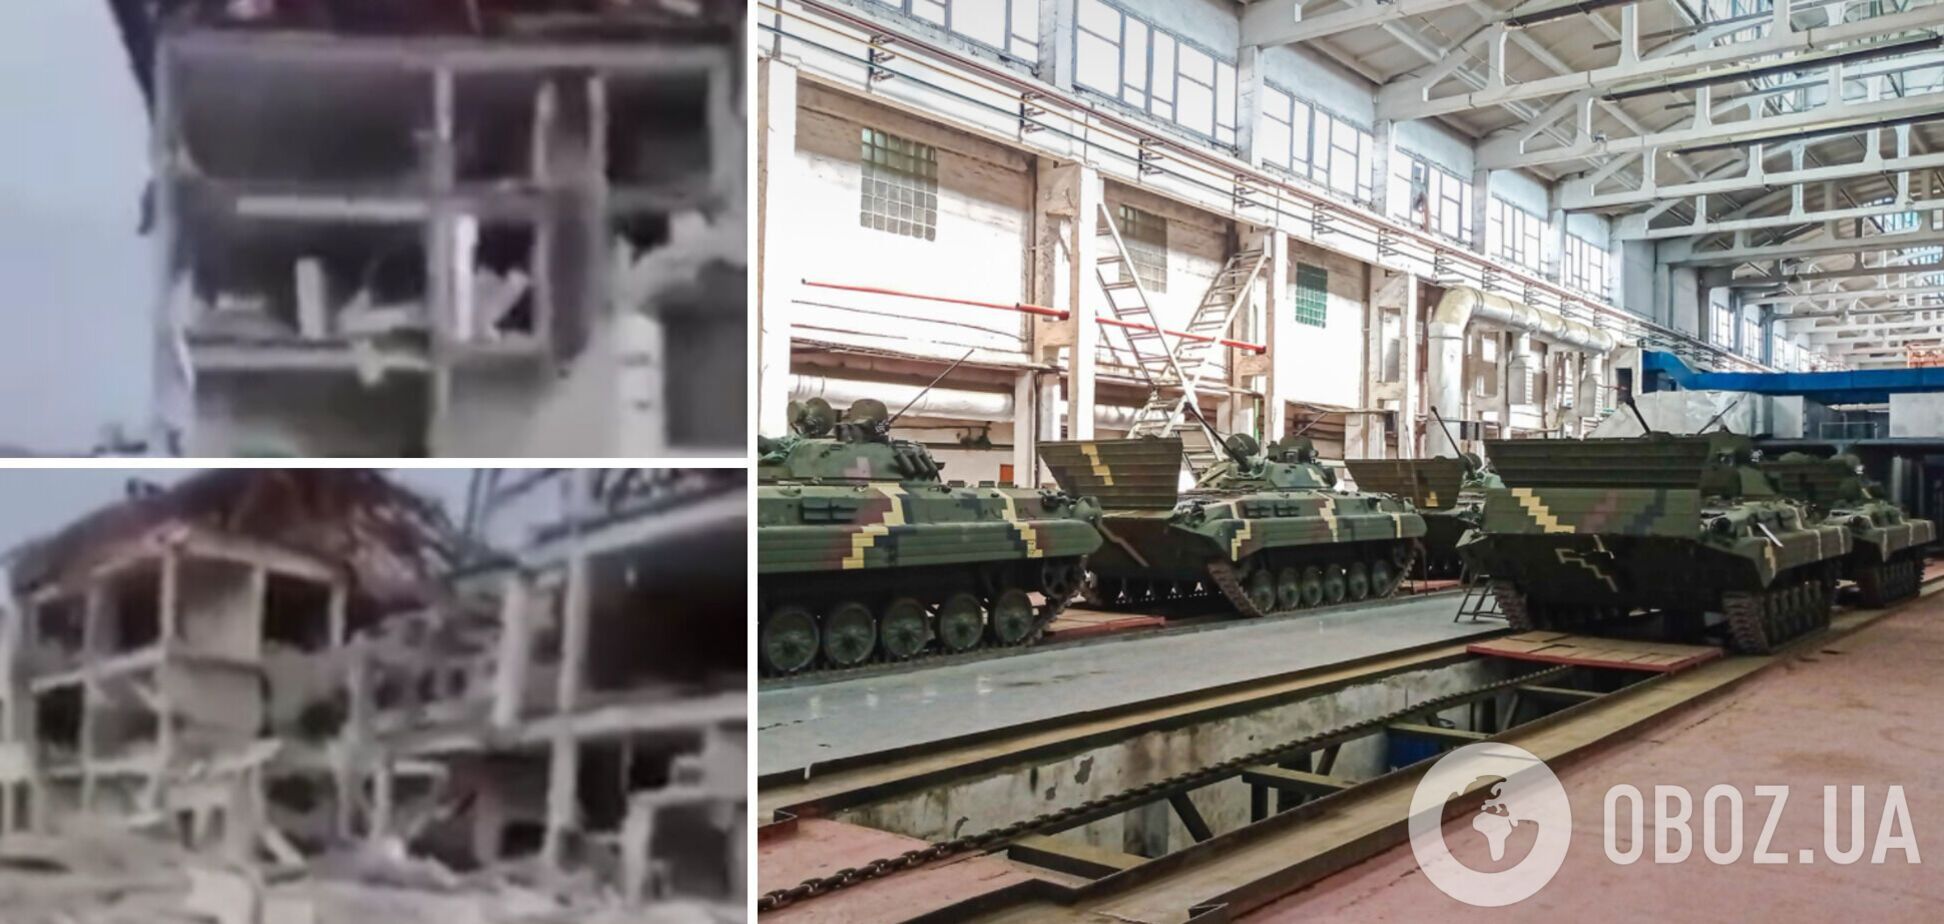 Купи каміння та металу: на відео показали наслідки бомбардування Житомирського бронетанкового заводу